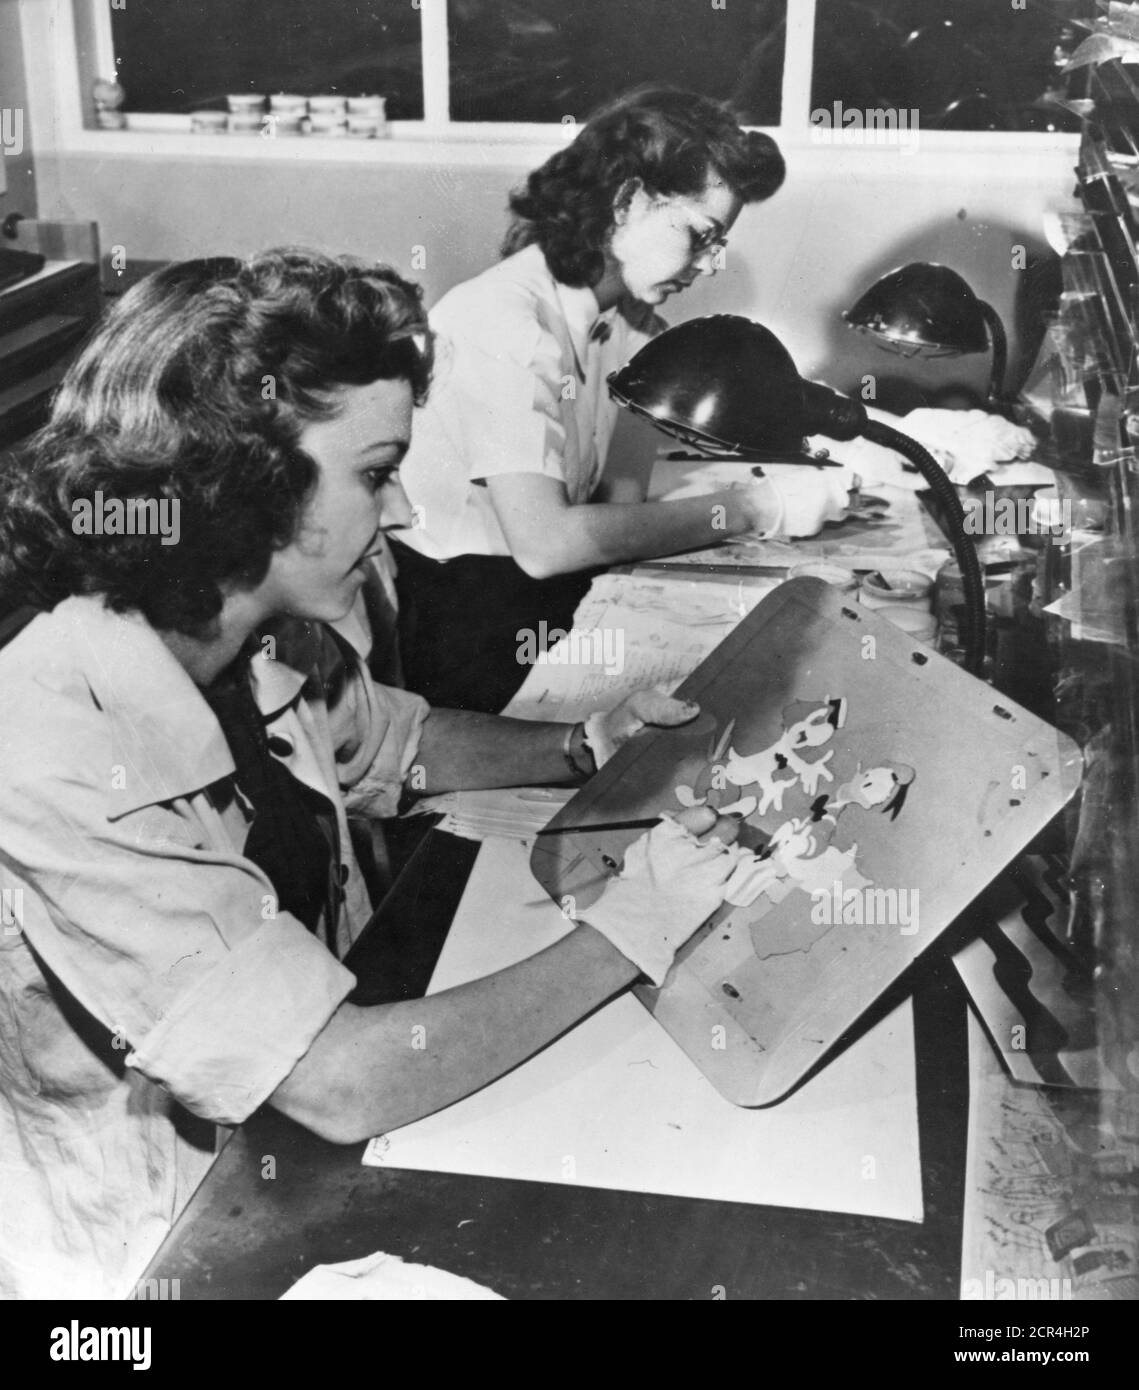 Während des Animationsprozesses, wenn eine Reihe von Animationszeichnungen fertiggestellt ist, gehen sie zur Farb- und Malabteilung der Disney Studios, wo ein großer Stab von Arbeiterinnen die Bleistiftzeichnungen auf Zelluloidquadrate (Cels) überträgt, die dann auf der Rückseite in Farbe gemalt werden, Burbank, CA, 1943. (Foto von Office of war Information/RBM Vintage Images) Stockfoto